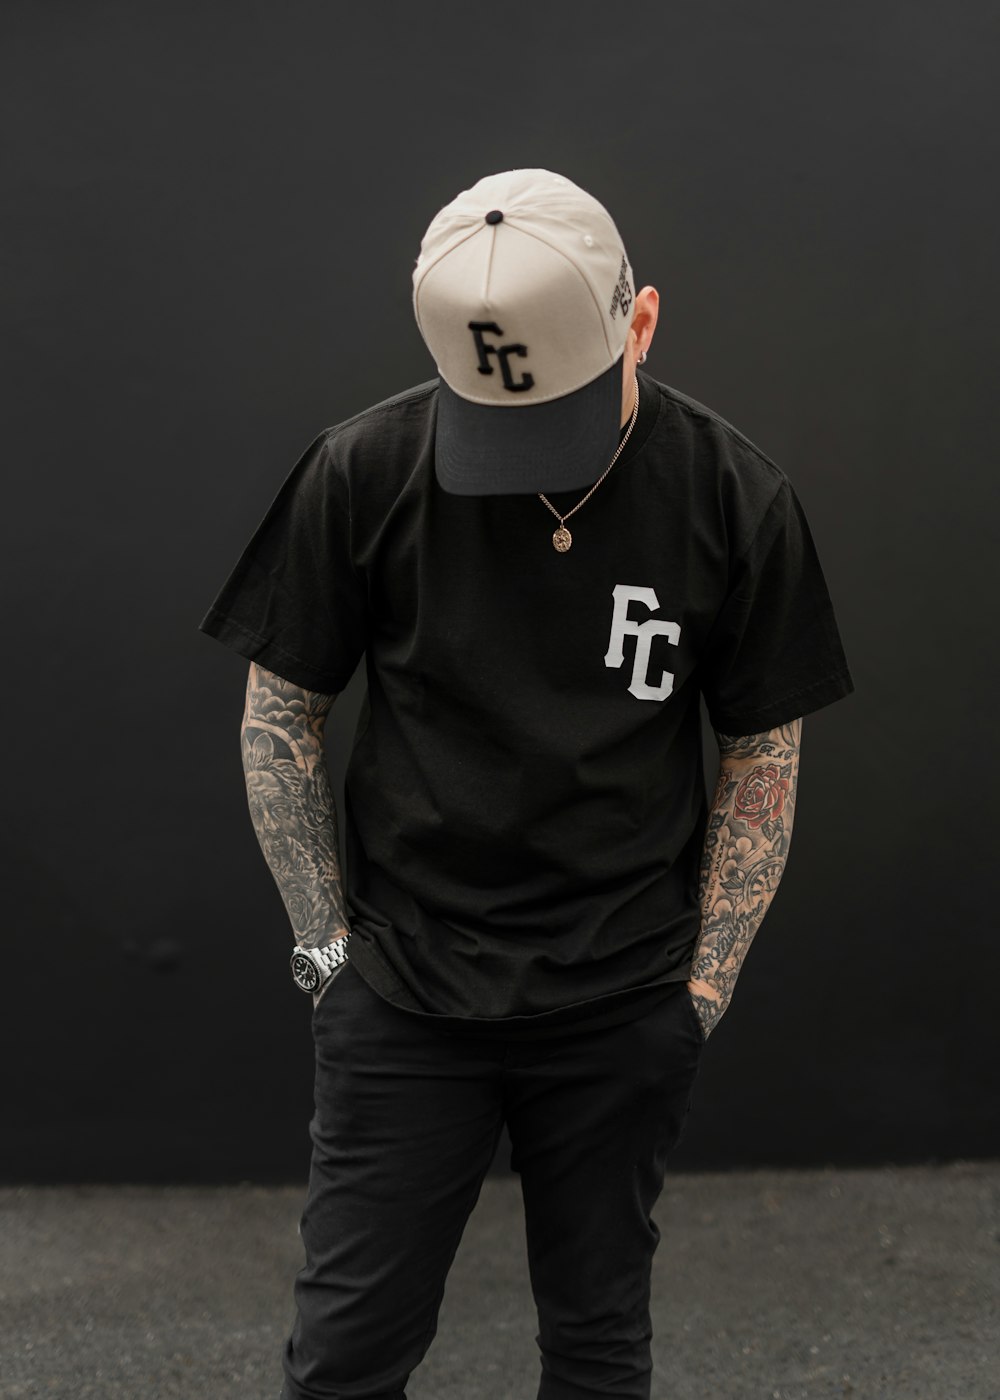 Ein Mann mit Tattoos trägt ein schwarzes Hemd und einen Hut